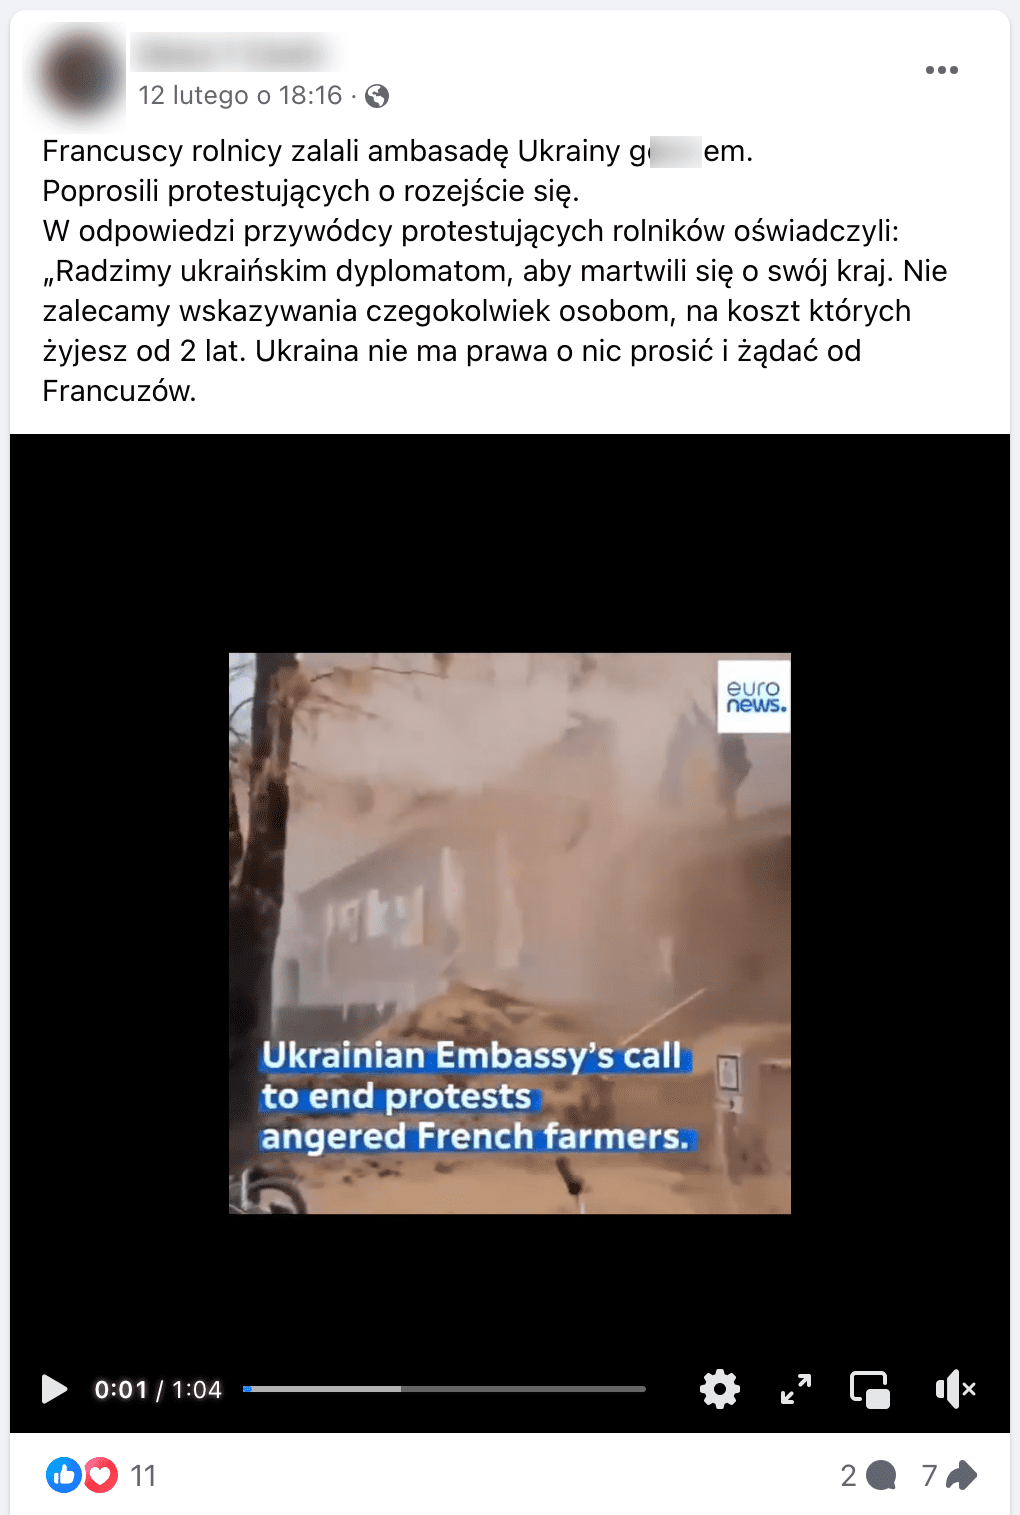  Zrzut ekranu posta na Facebooku. W kadrze dołączonego nagrania znajduje się budynek na którym wiszą flagi Francji, Ukrainy i Unii Europejskiej. Obrzucany jest warstwą obornika. W prawym górnym rogu jest logo redakcji Euronews.